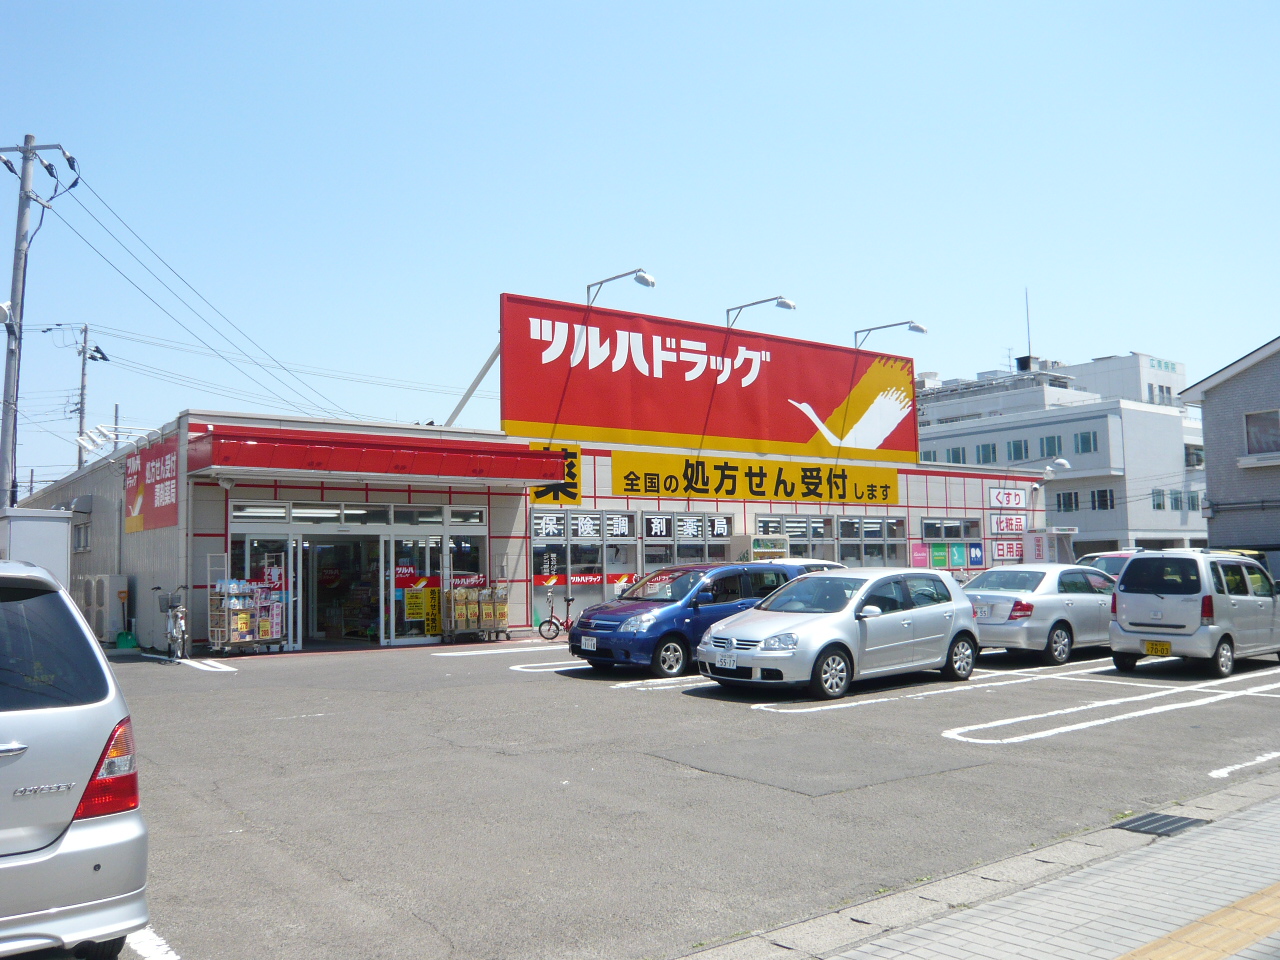 Dorakkusutoa. Tsuruha drag Nagamachiminami shop 430m until (drugstore)